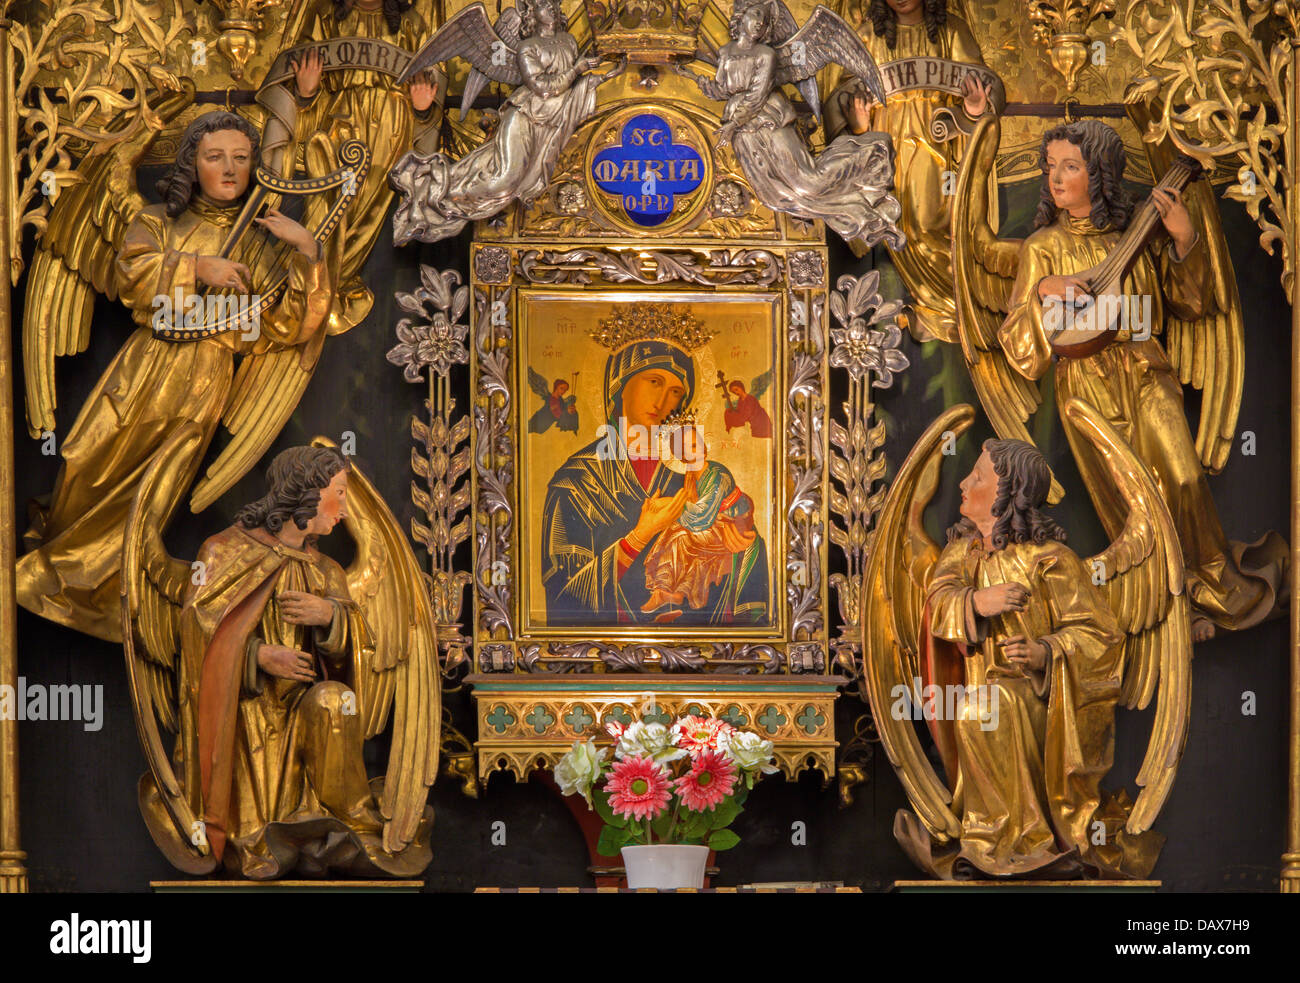 VIENNA - luglio 3: parte del nuovo gotico in legno lato policromo altare con Madonna gotica chiesa di Maria am Gestade Foto Stock